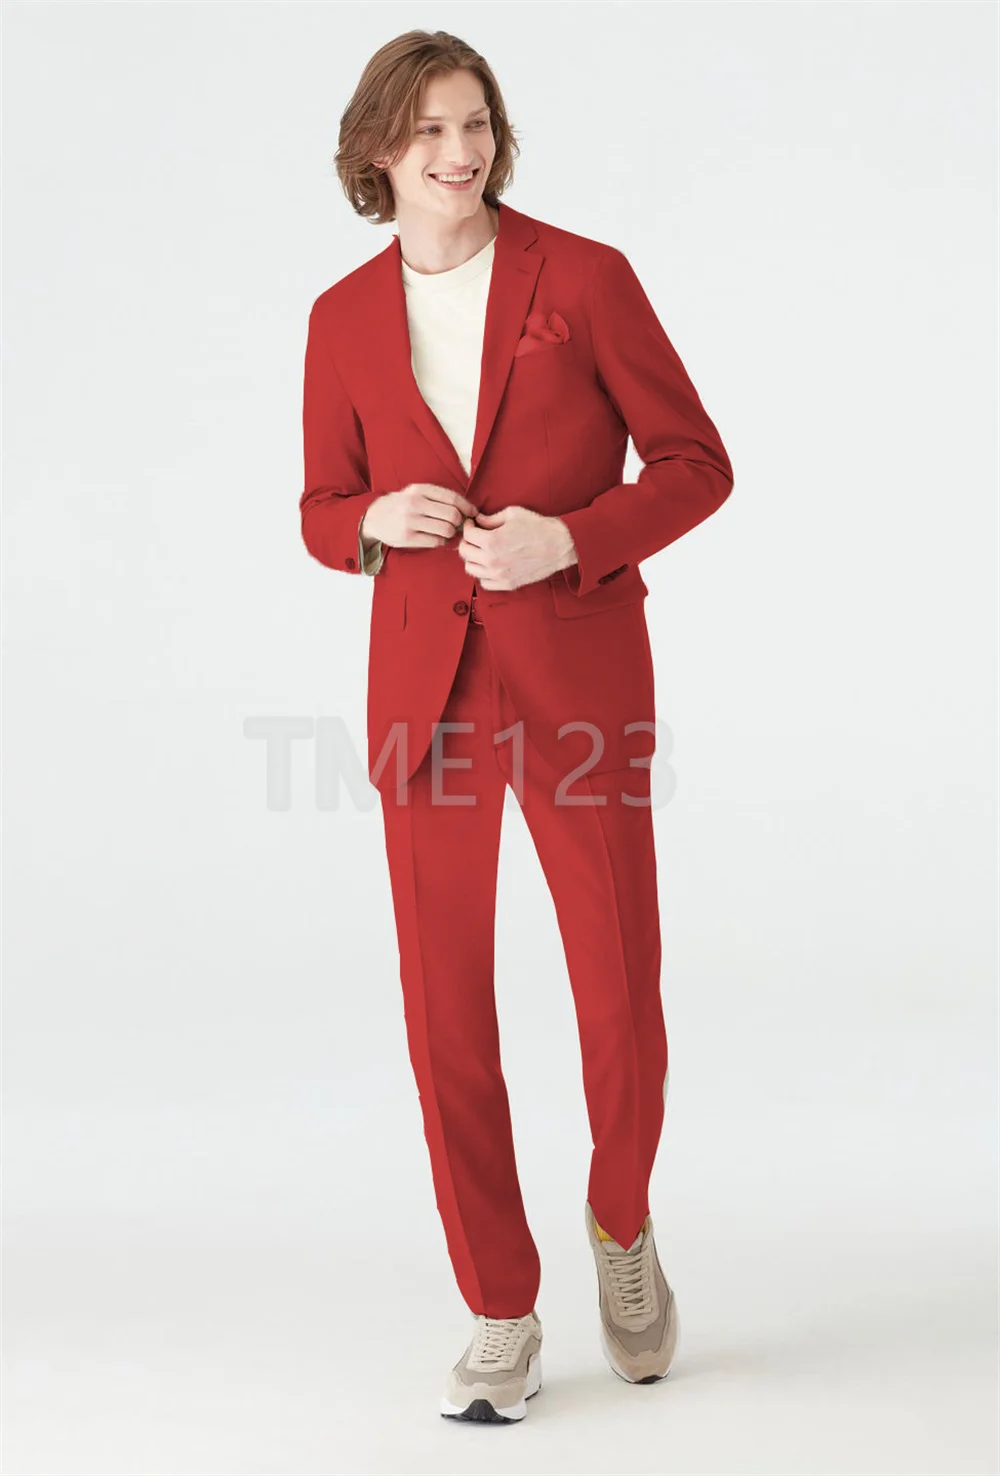 Mens Suit Groom Wedding Dress Groomsmen Terno Masculino Suits Costume Homme Jacket + Pants 2 Piece Trajes De Hombre 2022